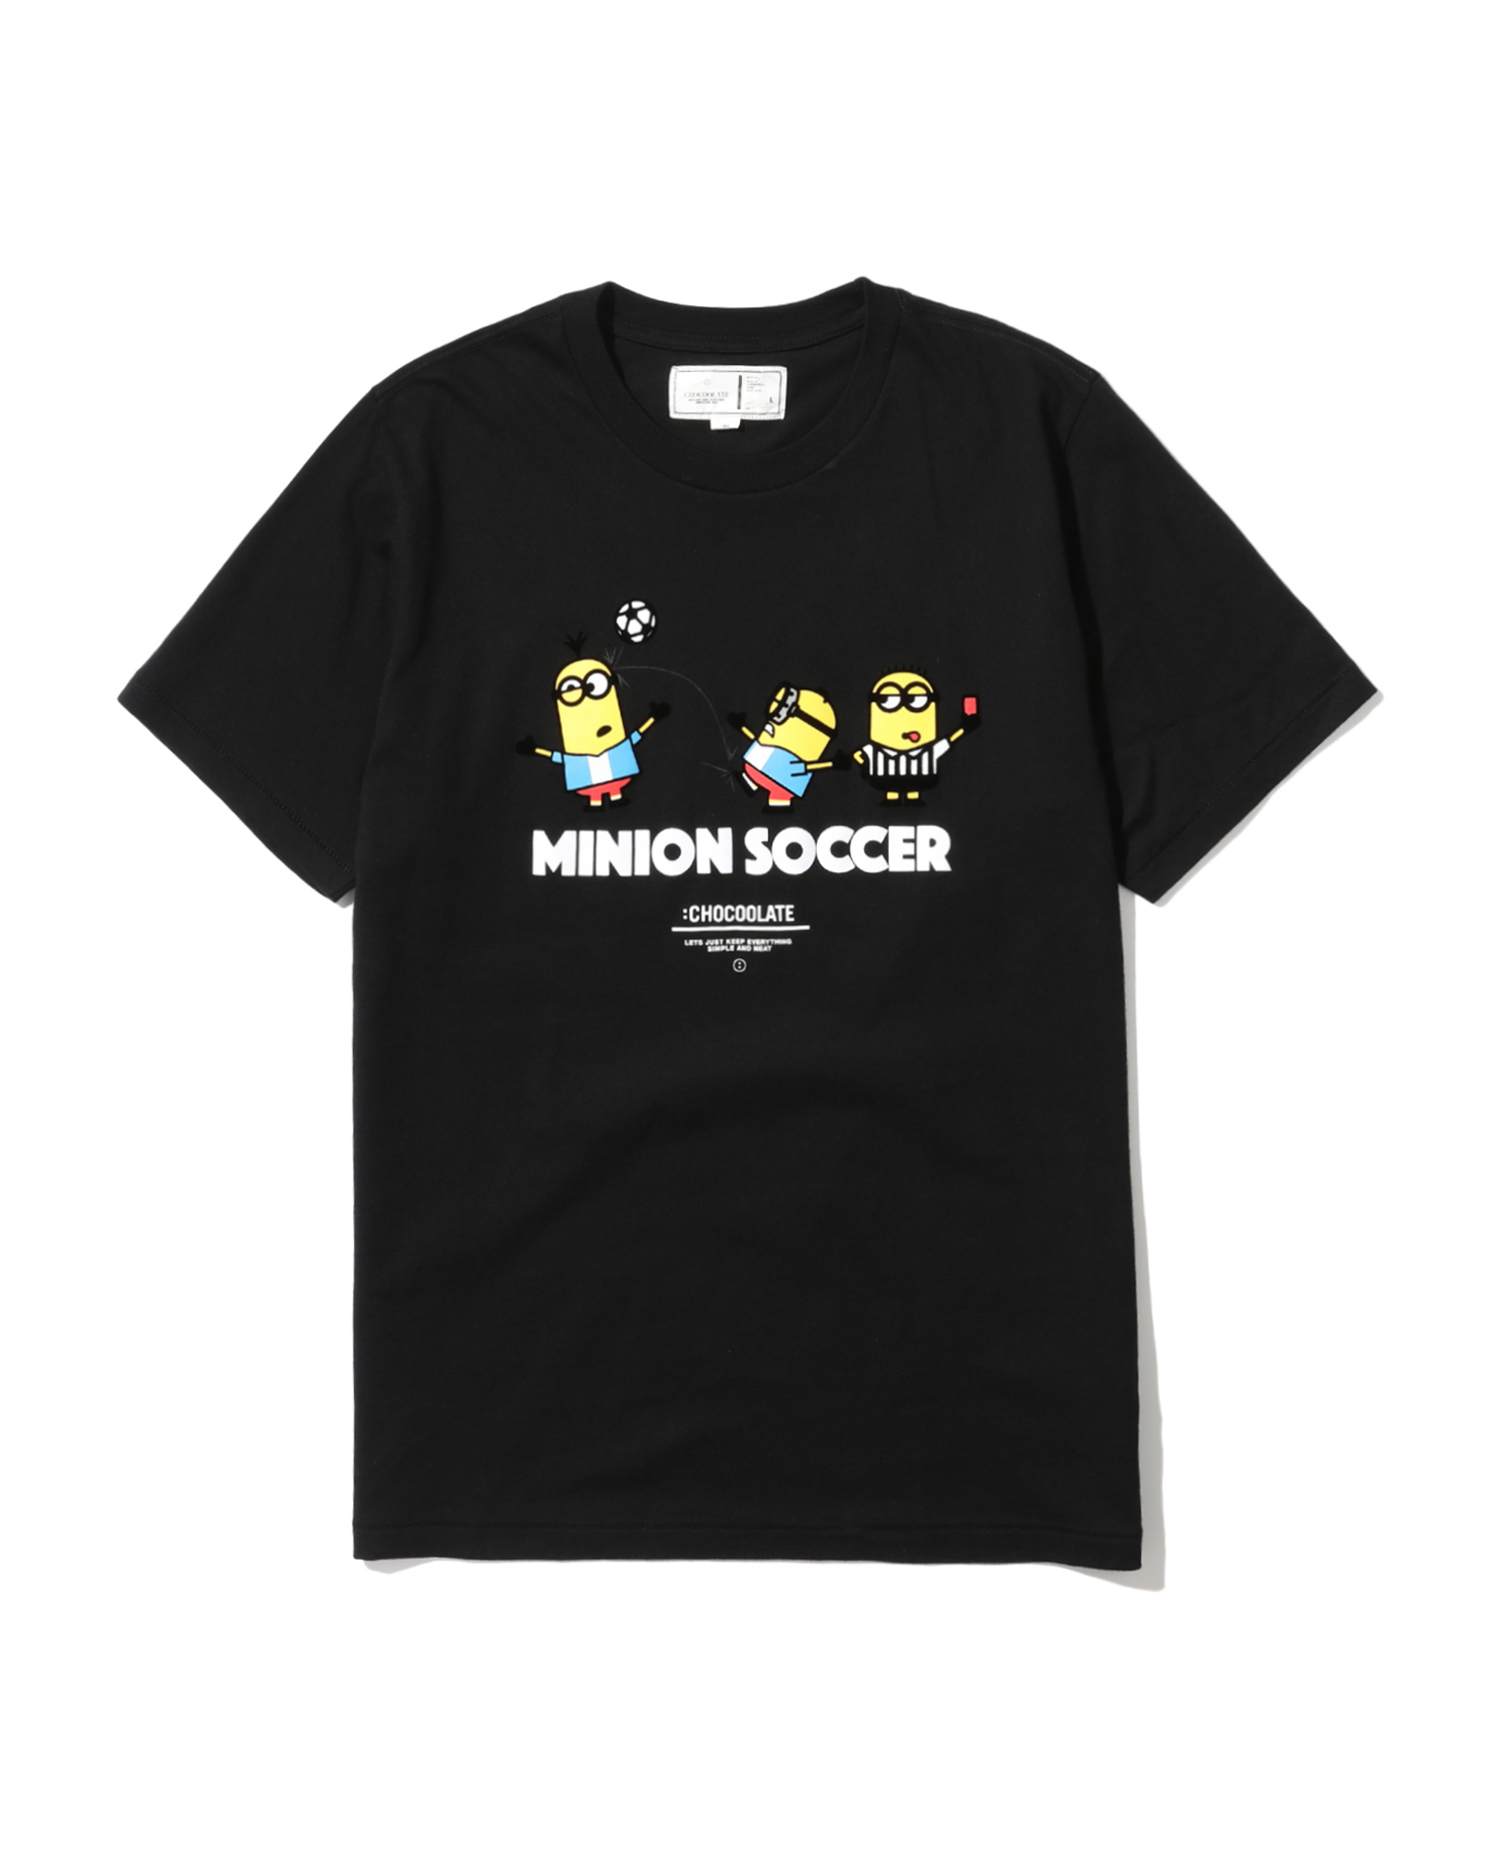 CHOCOOLATE X MINIONS 情侣 小黄人印花踢球图案圆领短袖T恤 1035